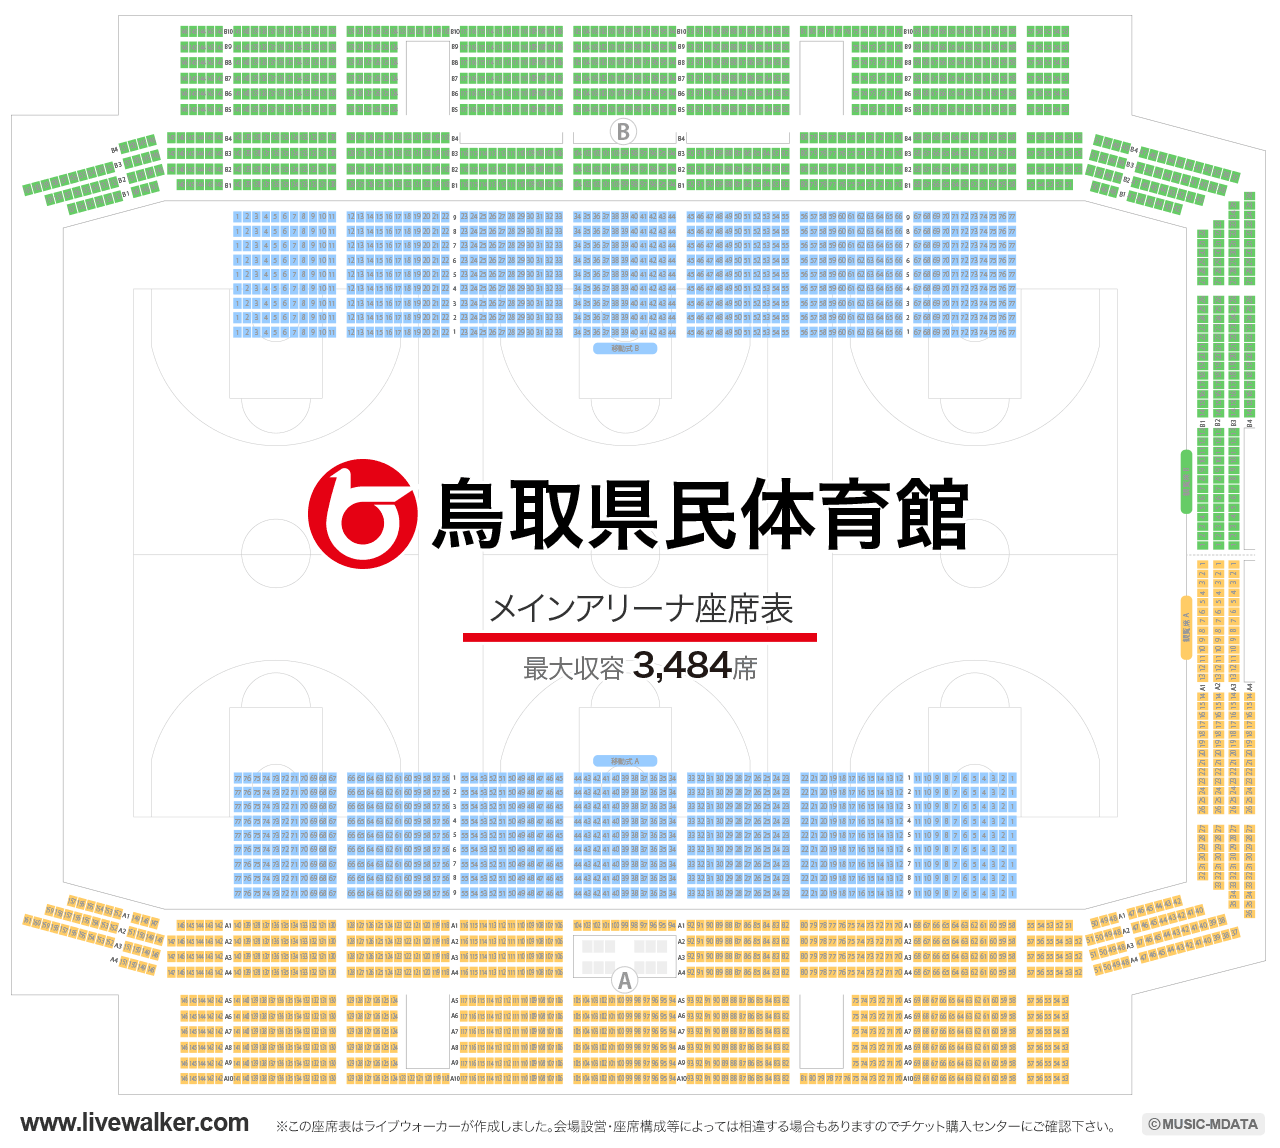 鳥取県民体育館メインアリーナの座席表